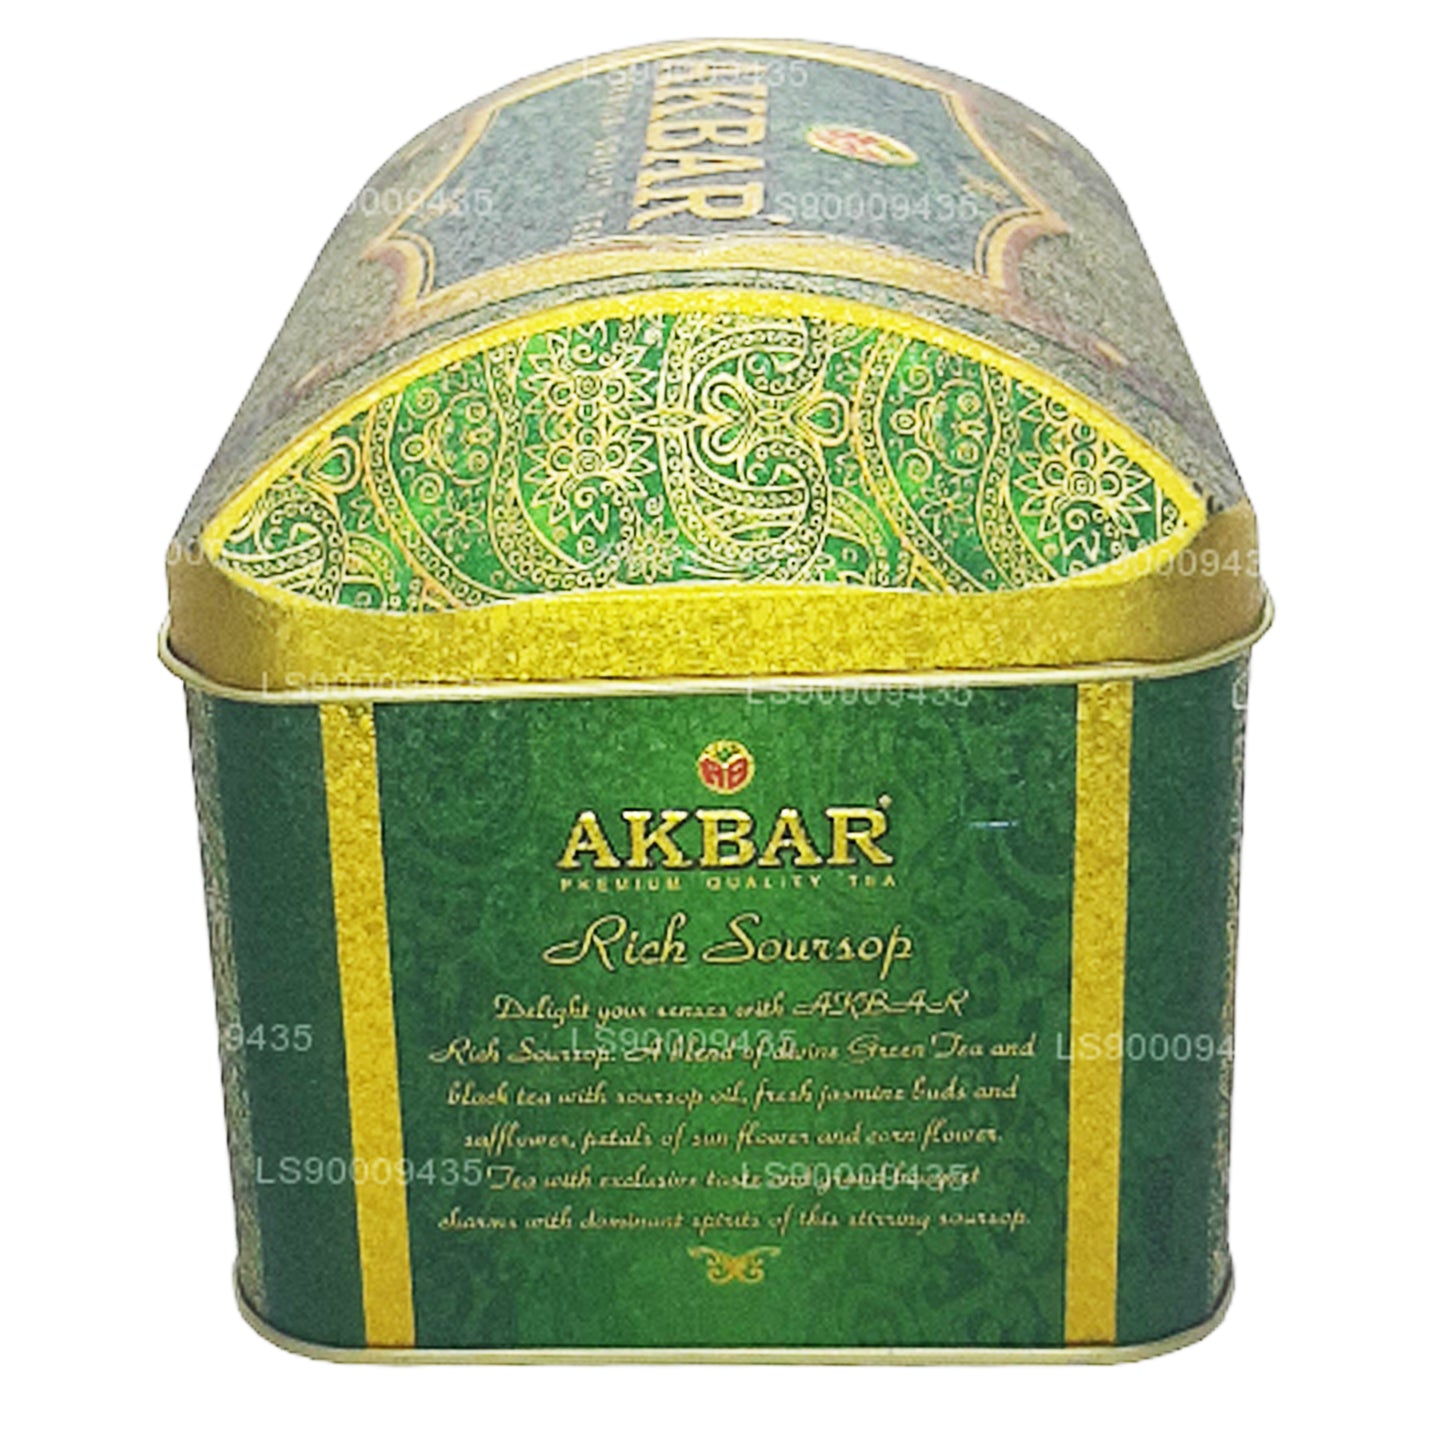 Акбар Эксклюзивная коллекция Богатая шкатулка с сокровищами Soursop (250 г)